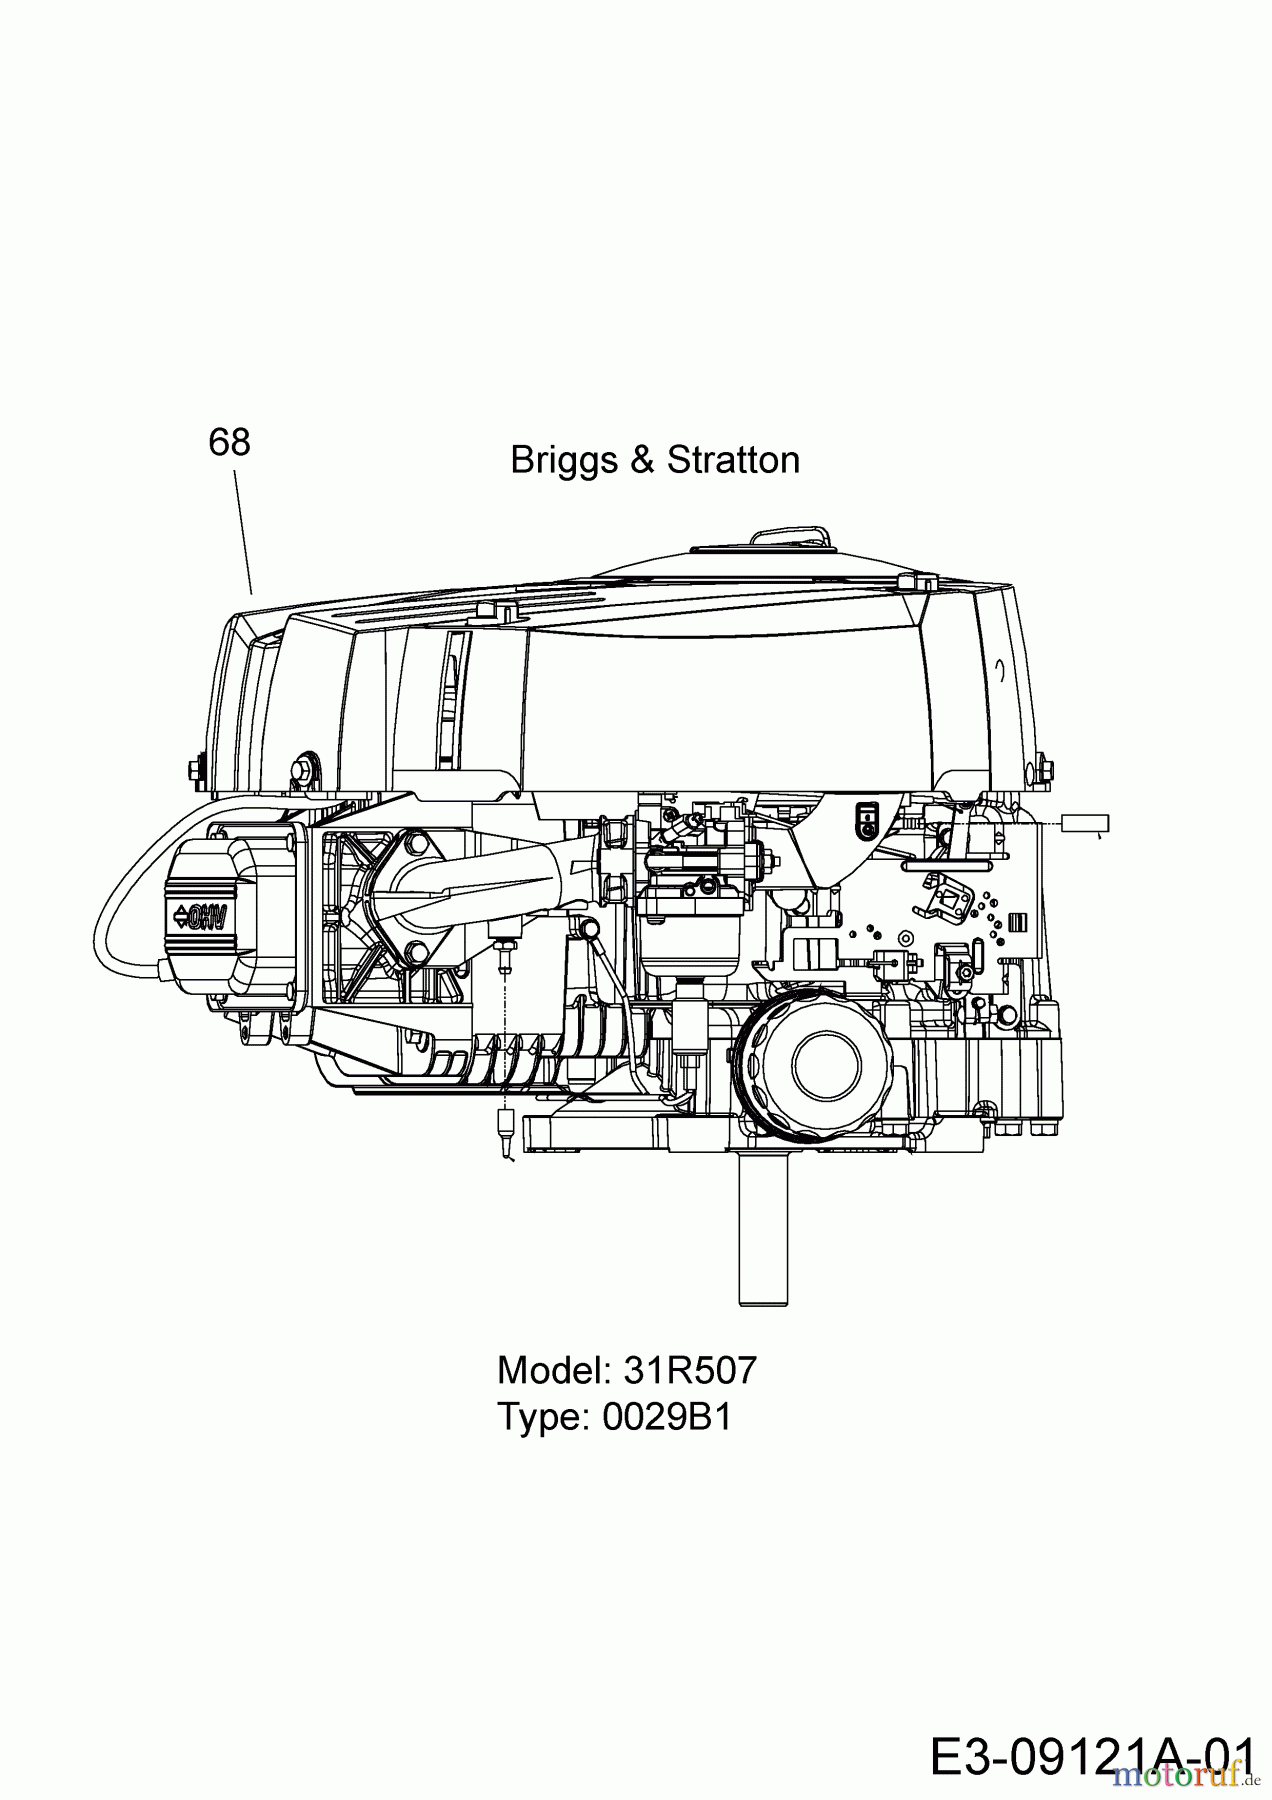  Wolf-Garten Tracteurs de pelouse Expert 92.155 H 13HM99WE650  (2016) Moteur Briggs & Stratton